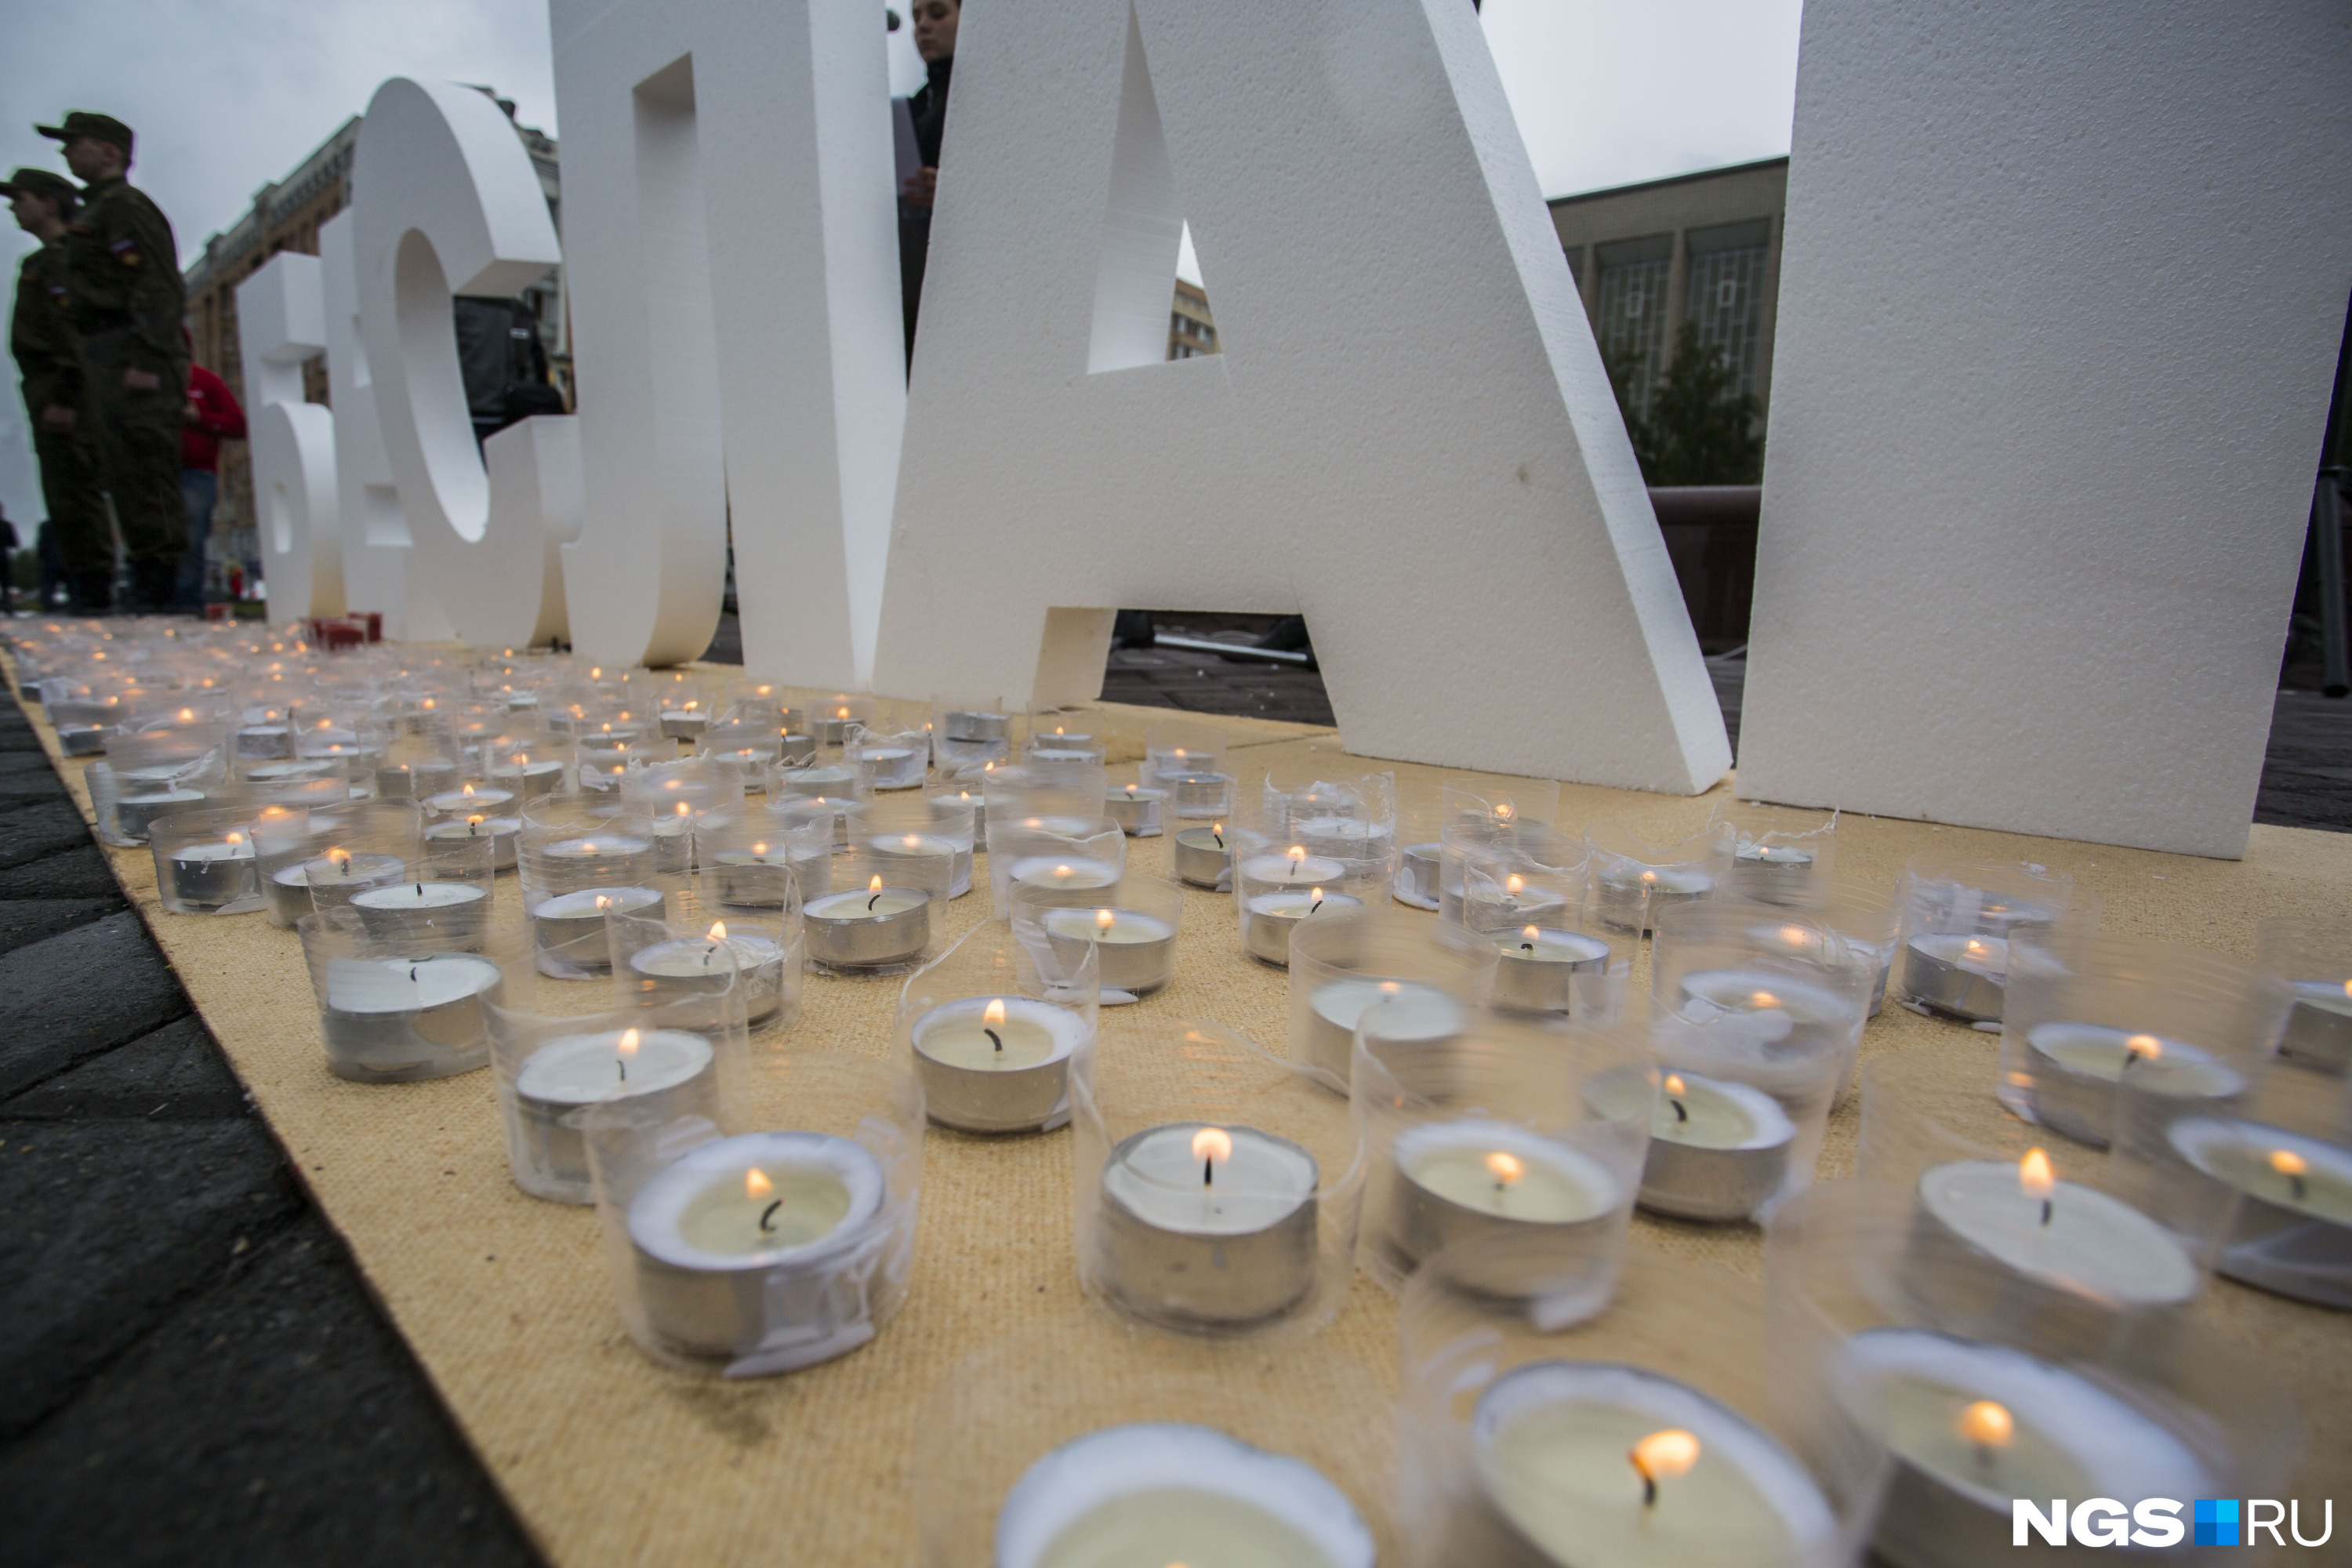 В память о жертвах бесланского теракта на площади поставили белые буквы